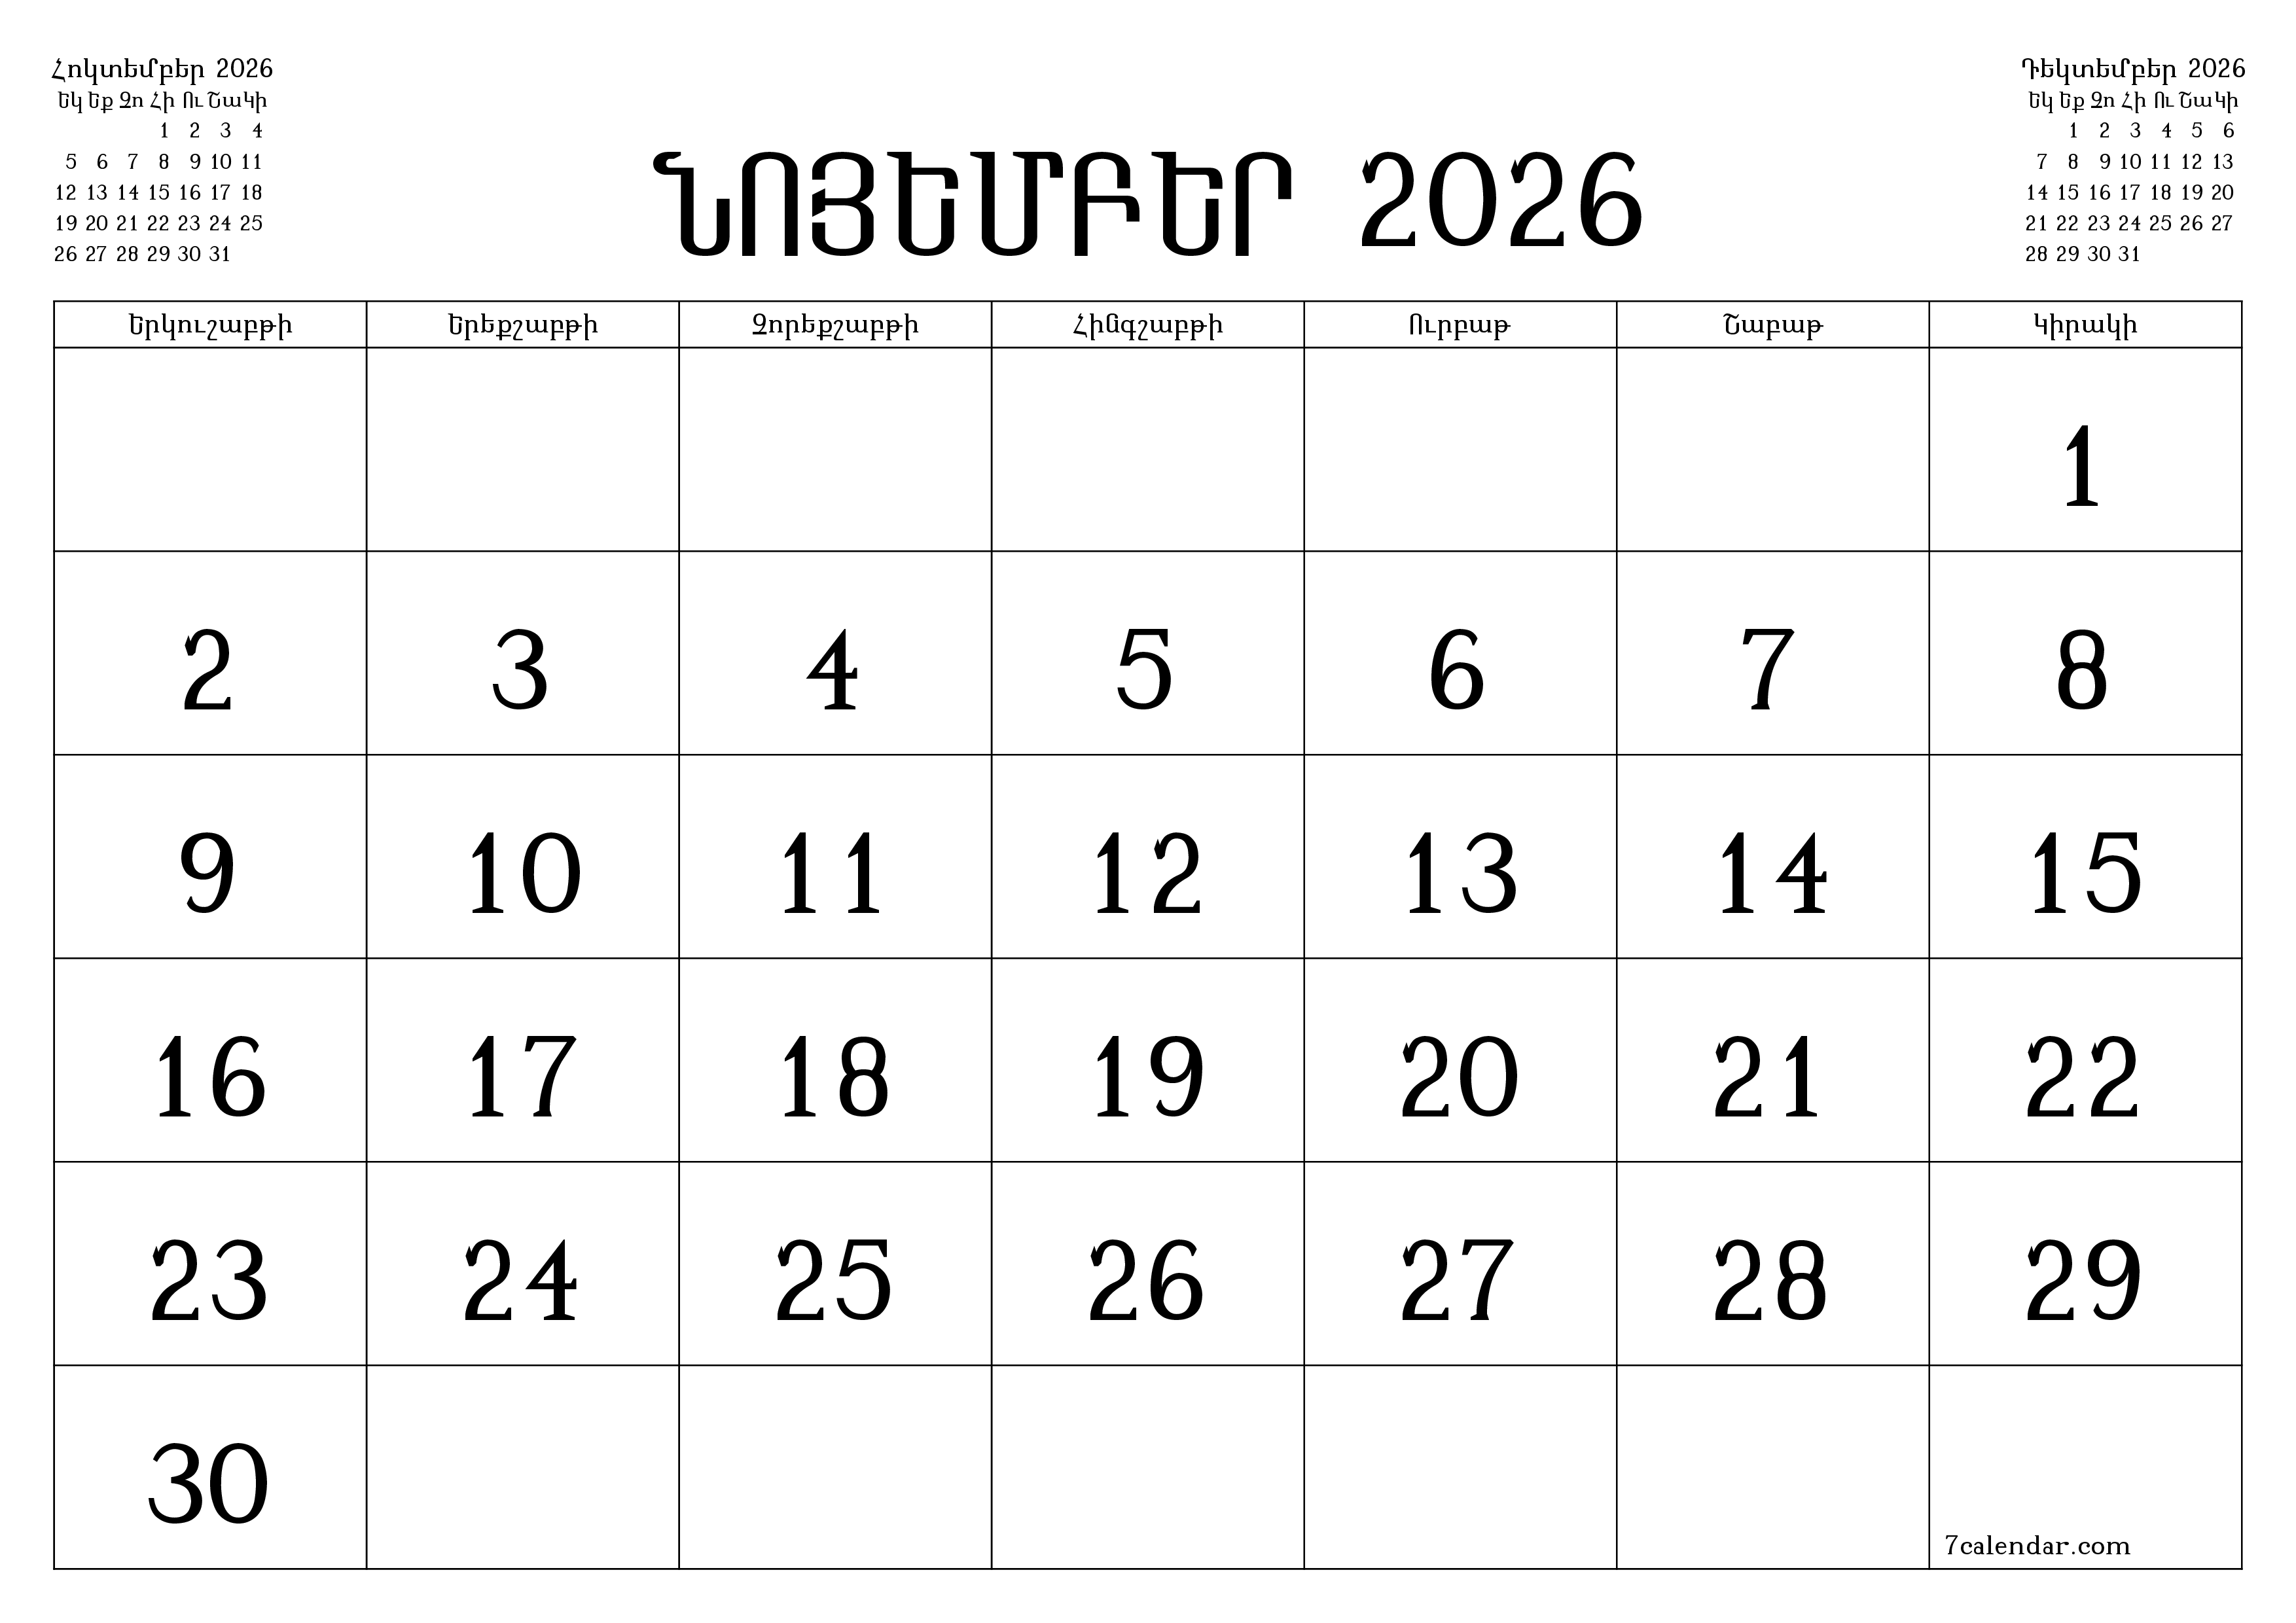 Դատարկ ամսական պլանավորող ամսվա համար Նոյեմբեր 2026 նշումներով, պահեք և տպեք PDF- ում PNG Armenian